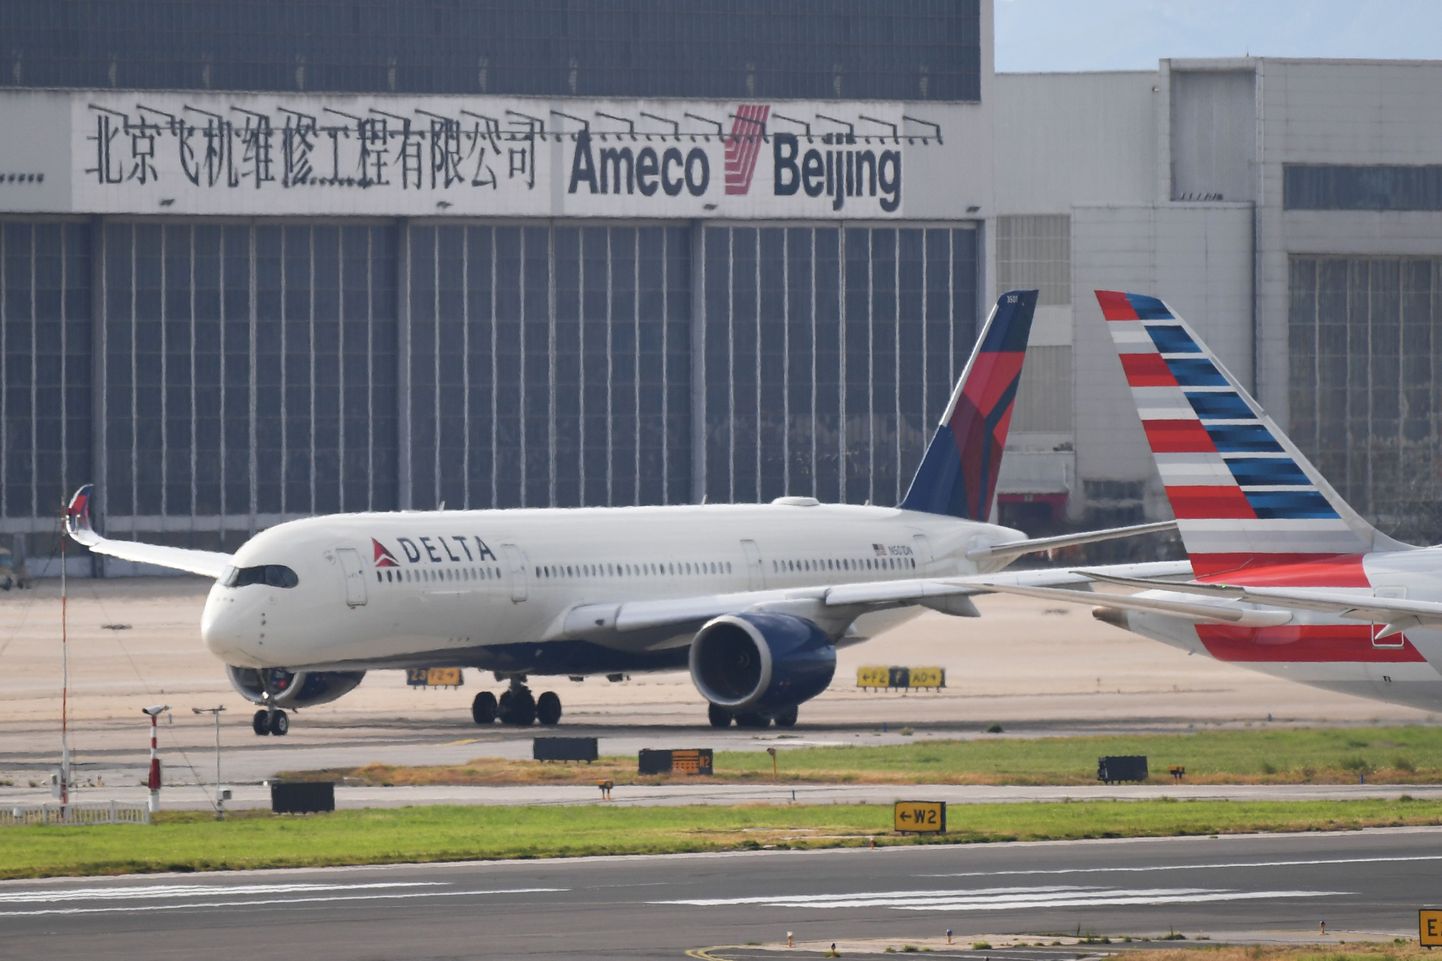 USA lennufirma Delta Airlines on üks nendest ettevõtetest, kes nõustus Pekingi ettepanekuga nimetada Taiwani kui Hiina osa.